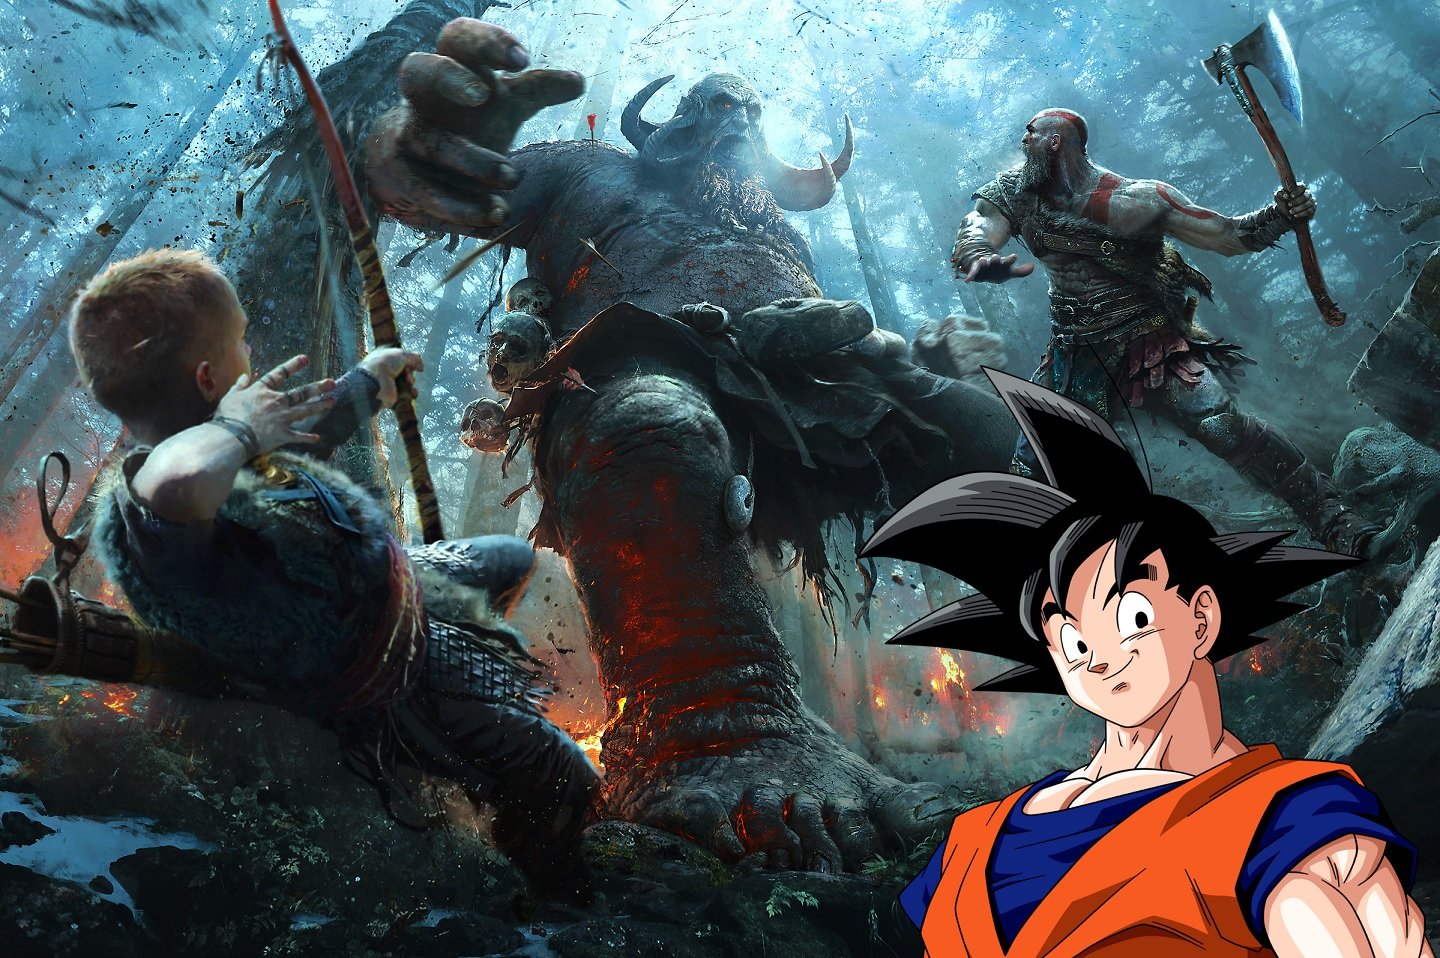 Artista imagina um crossover épico entre Dragon Ball e God of War